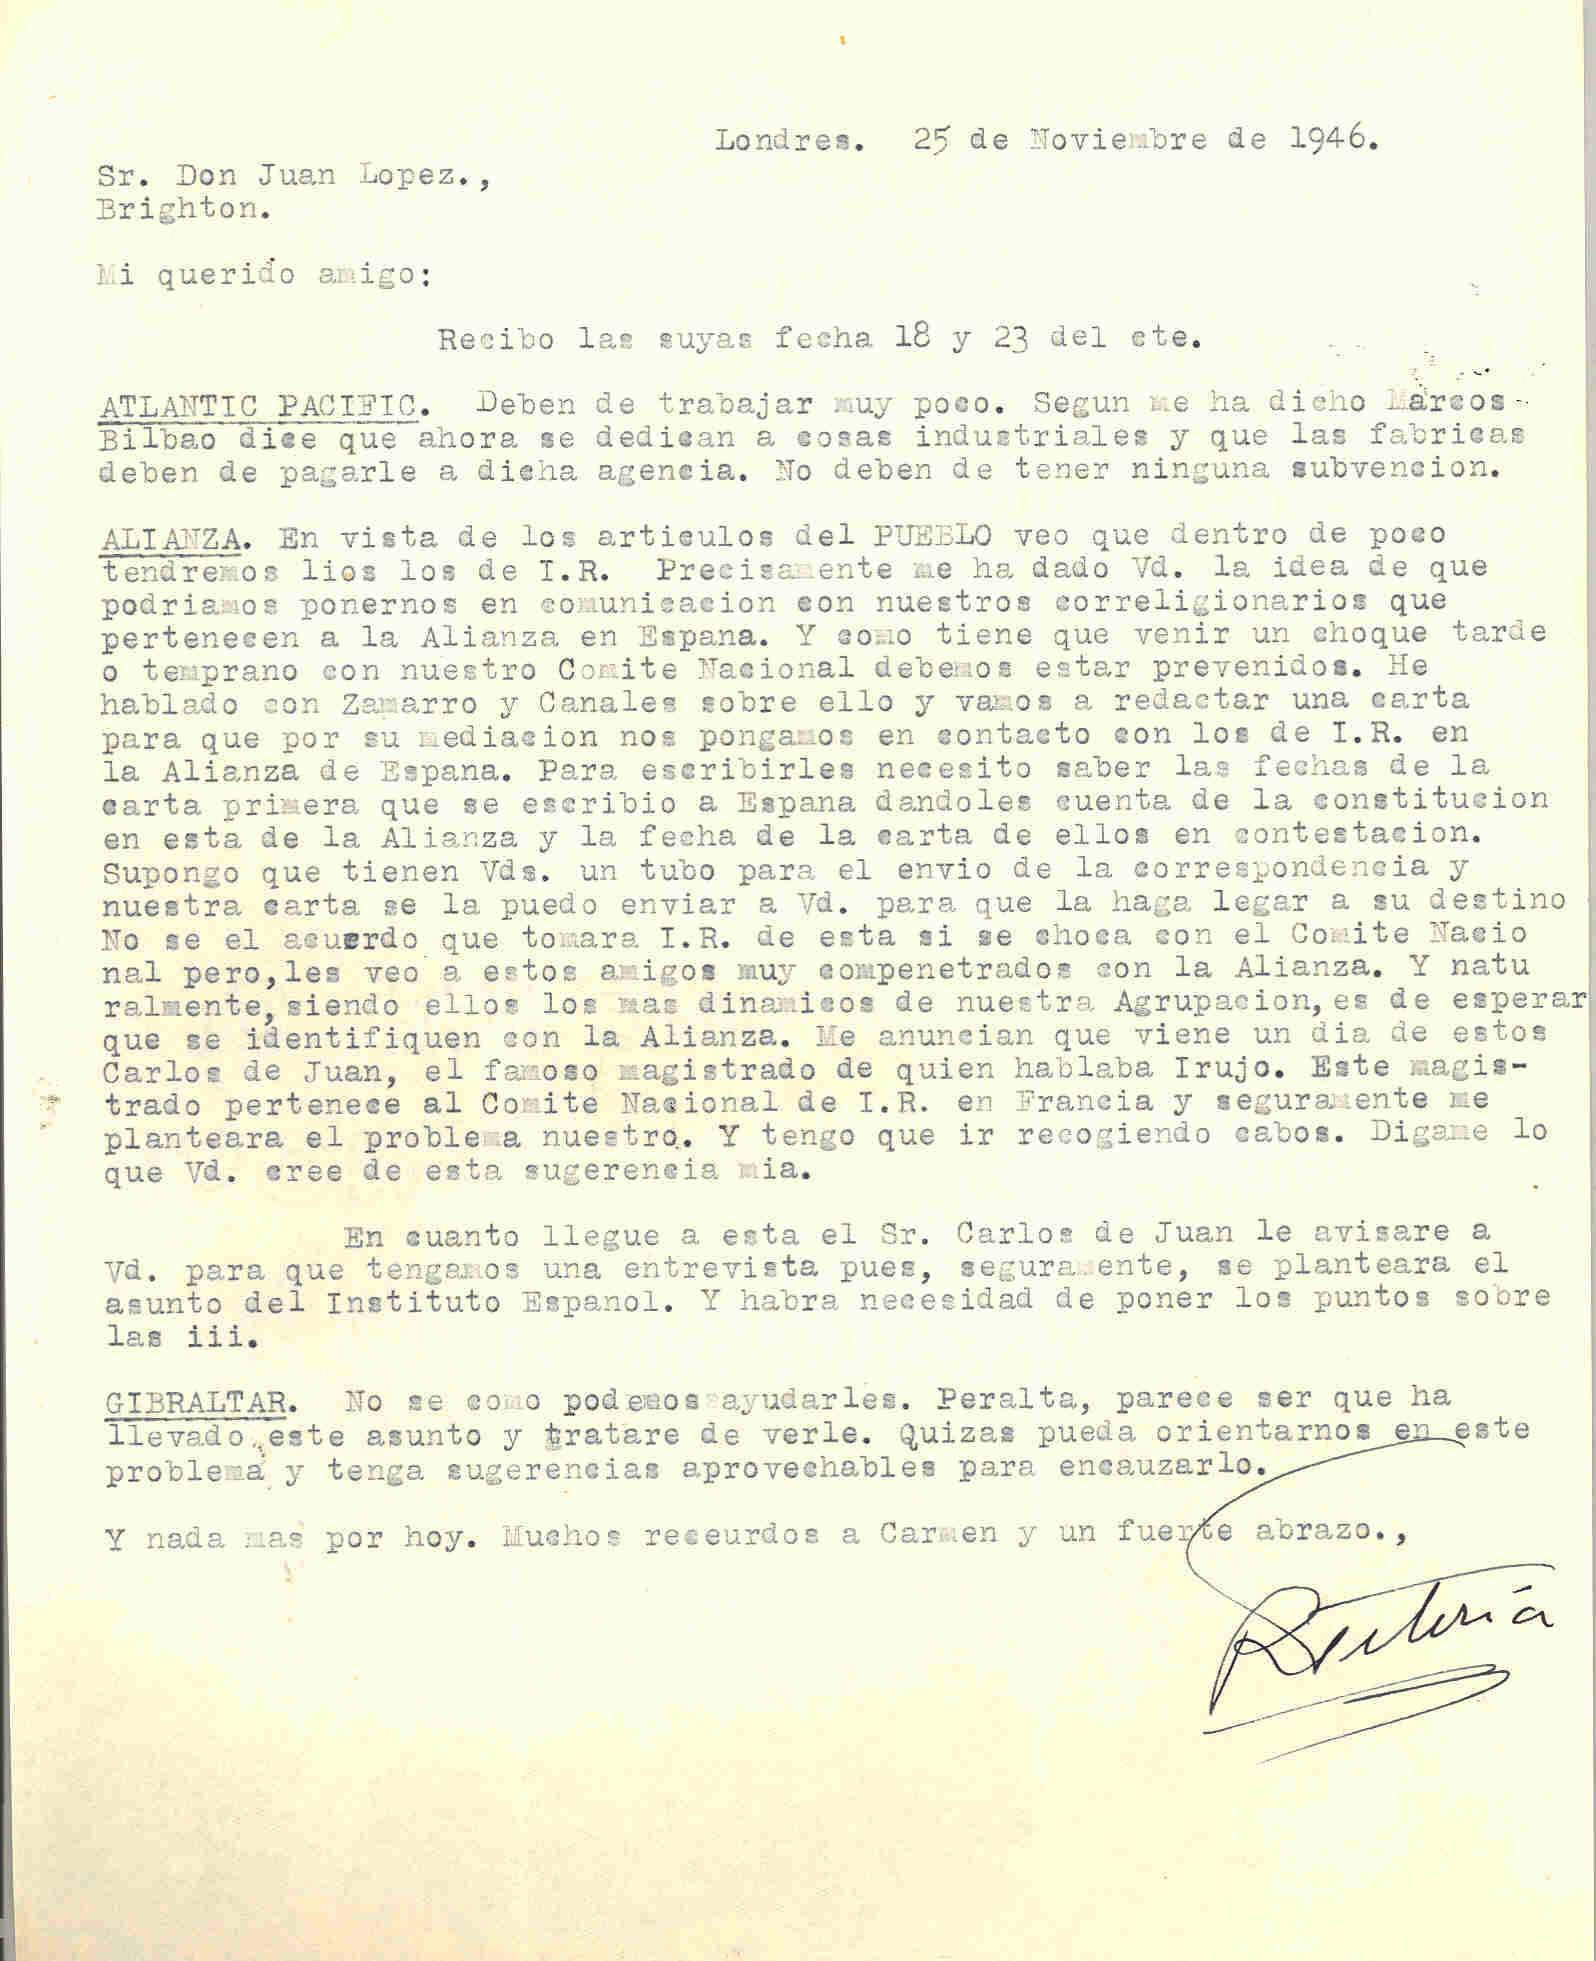 Carta de Roque Victoria en la que habla de redactar una carta para ponerse en contacto con los de Izquierda Republicana en la Alianza de España para prevenir el choque con el Comité Nacional.